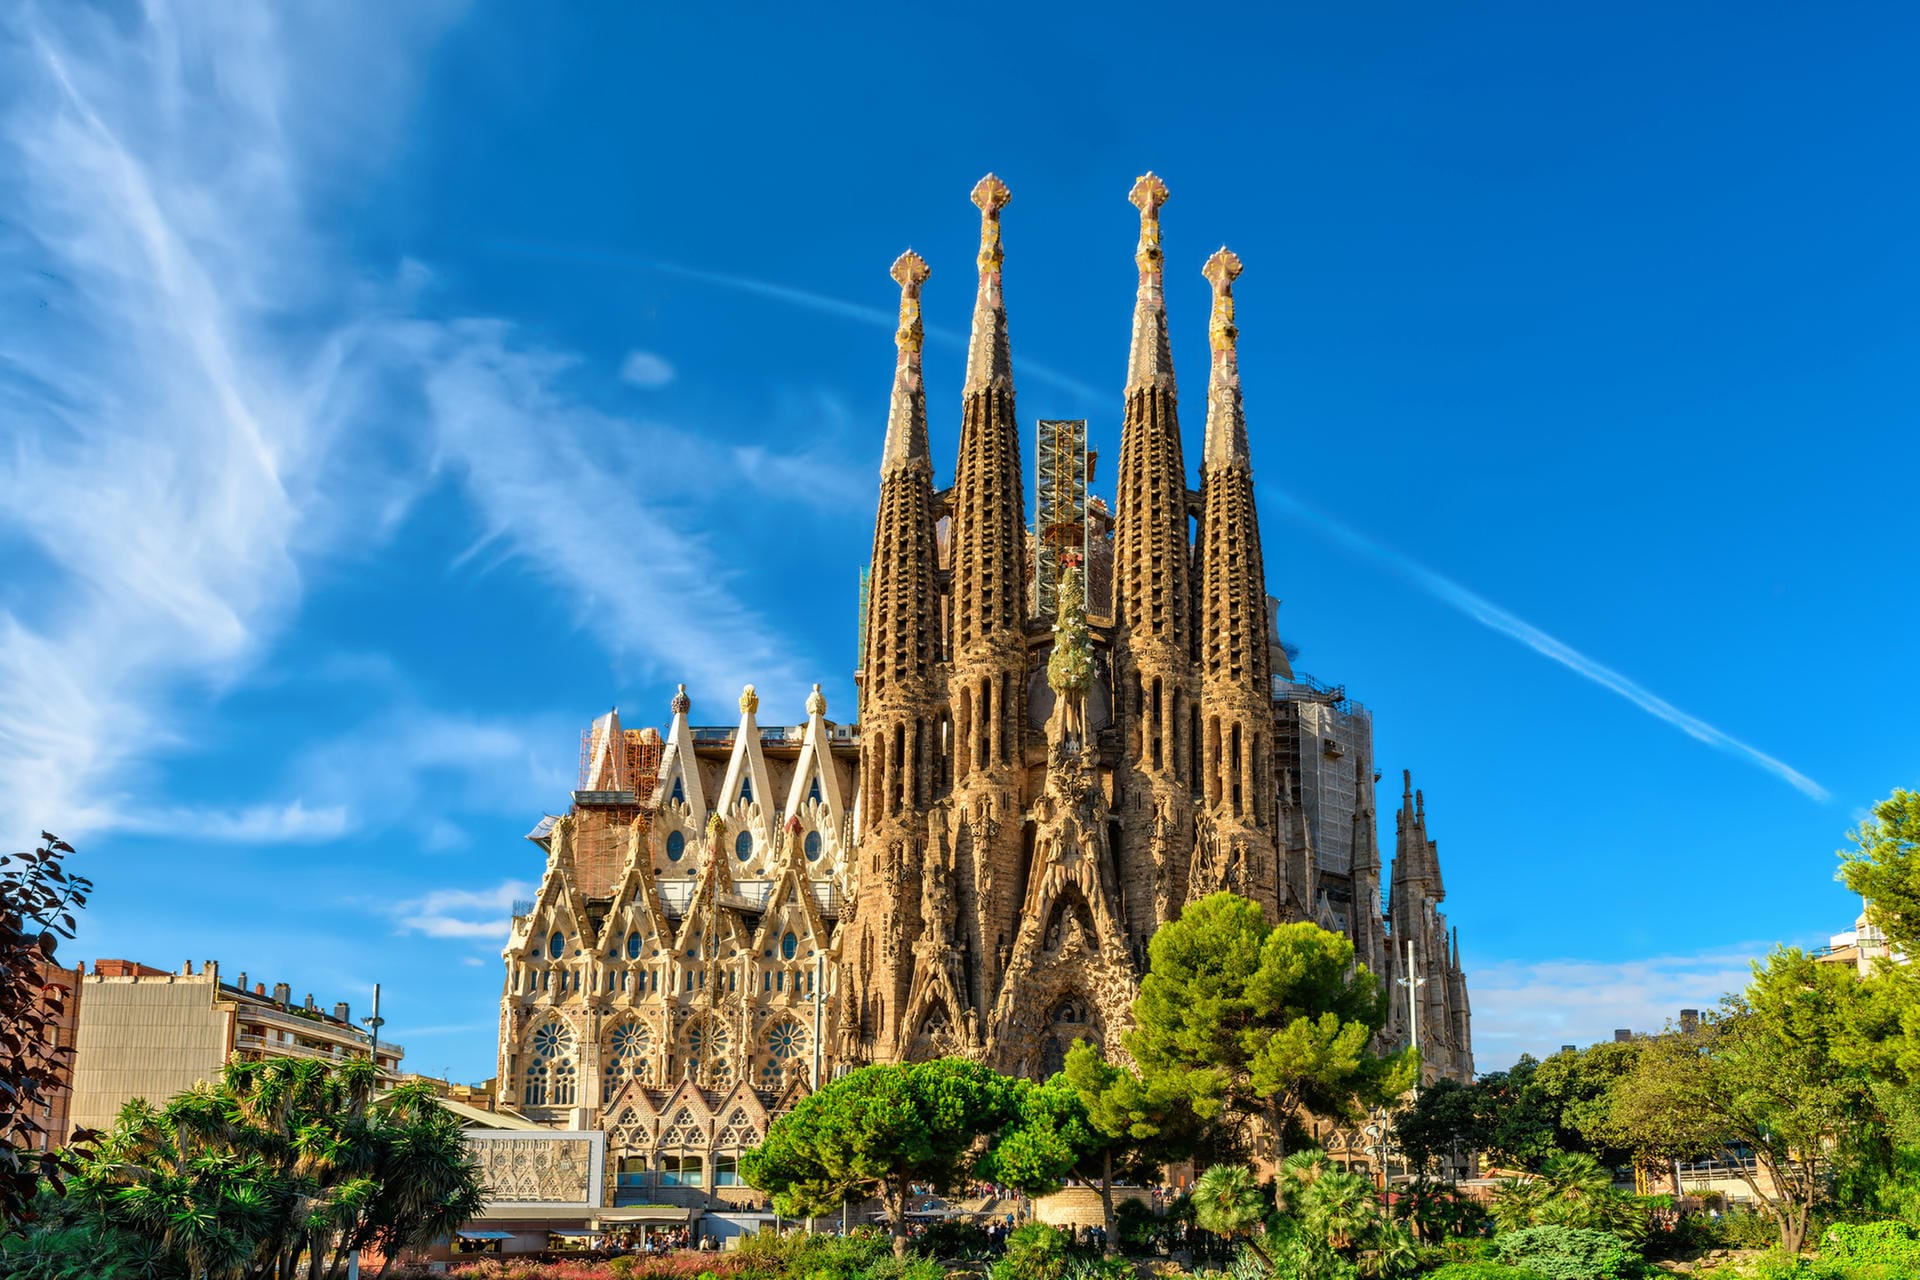 Sagrada Familia: Wer das Bauwerk von Antoni Gaudí besichtigen will, muss nicht nur Eintritt bezahlen. Es ist auch nur 400 Personen gestattet, pro halbe Stunde das Gebäude zu besuchen.